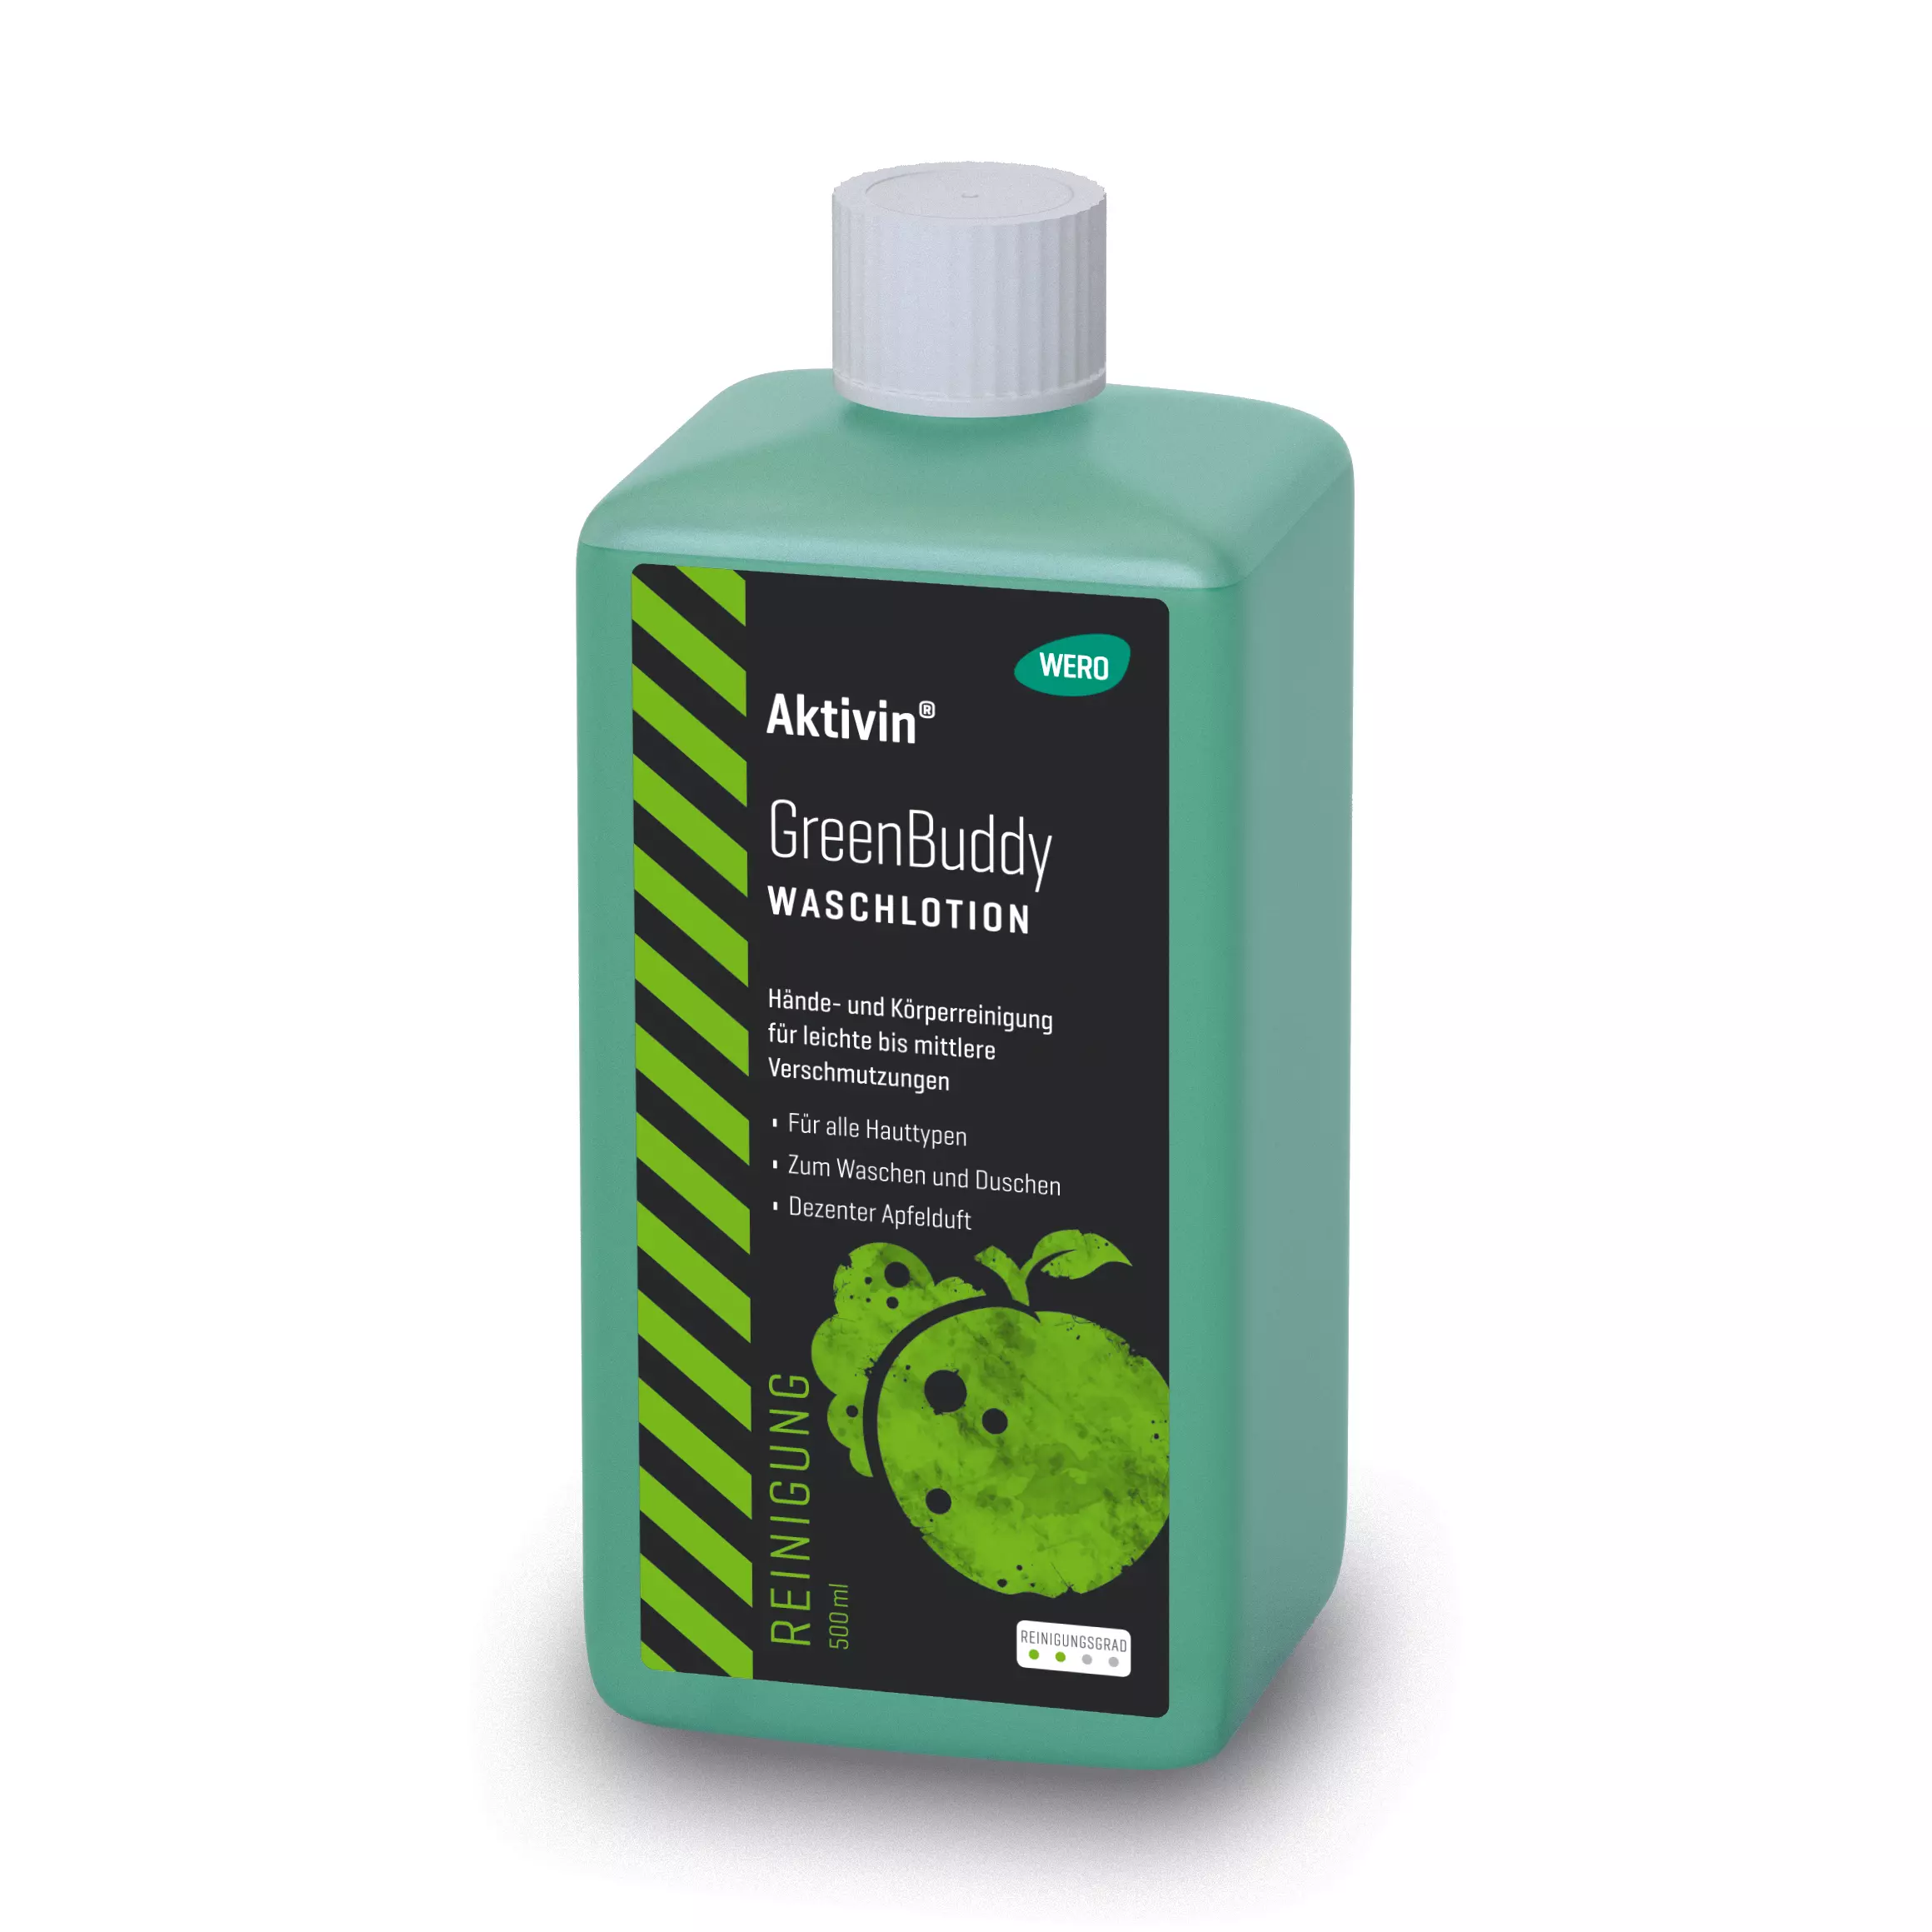 Waschlotion Aktivin® GreenBuddy - Euroflasche, 500 ml